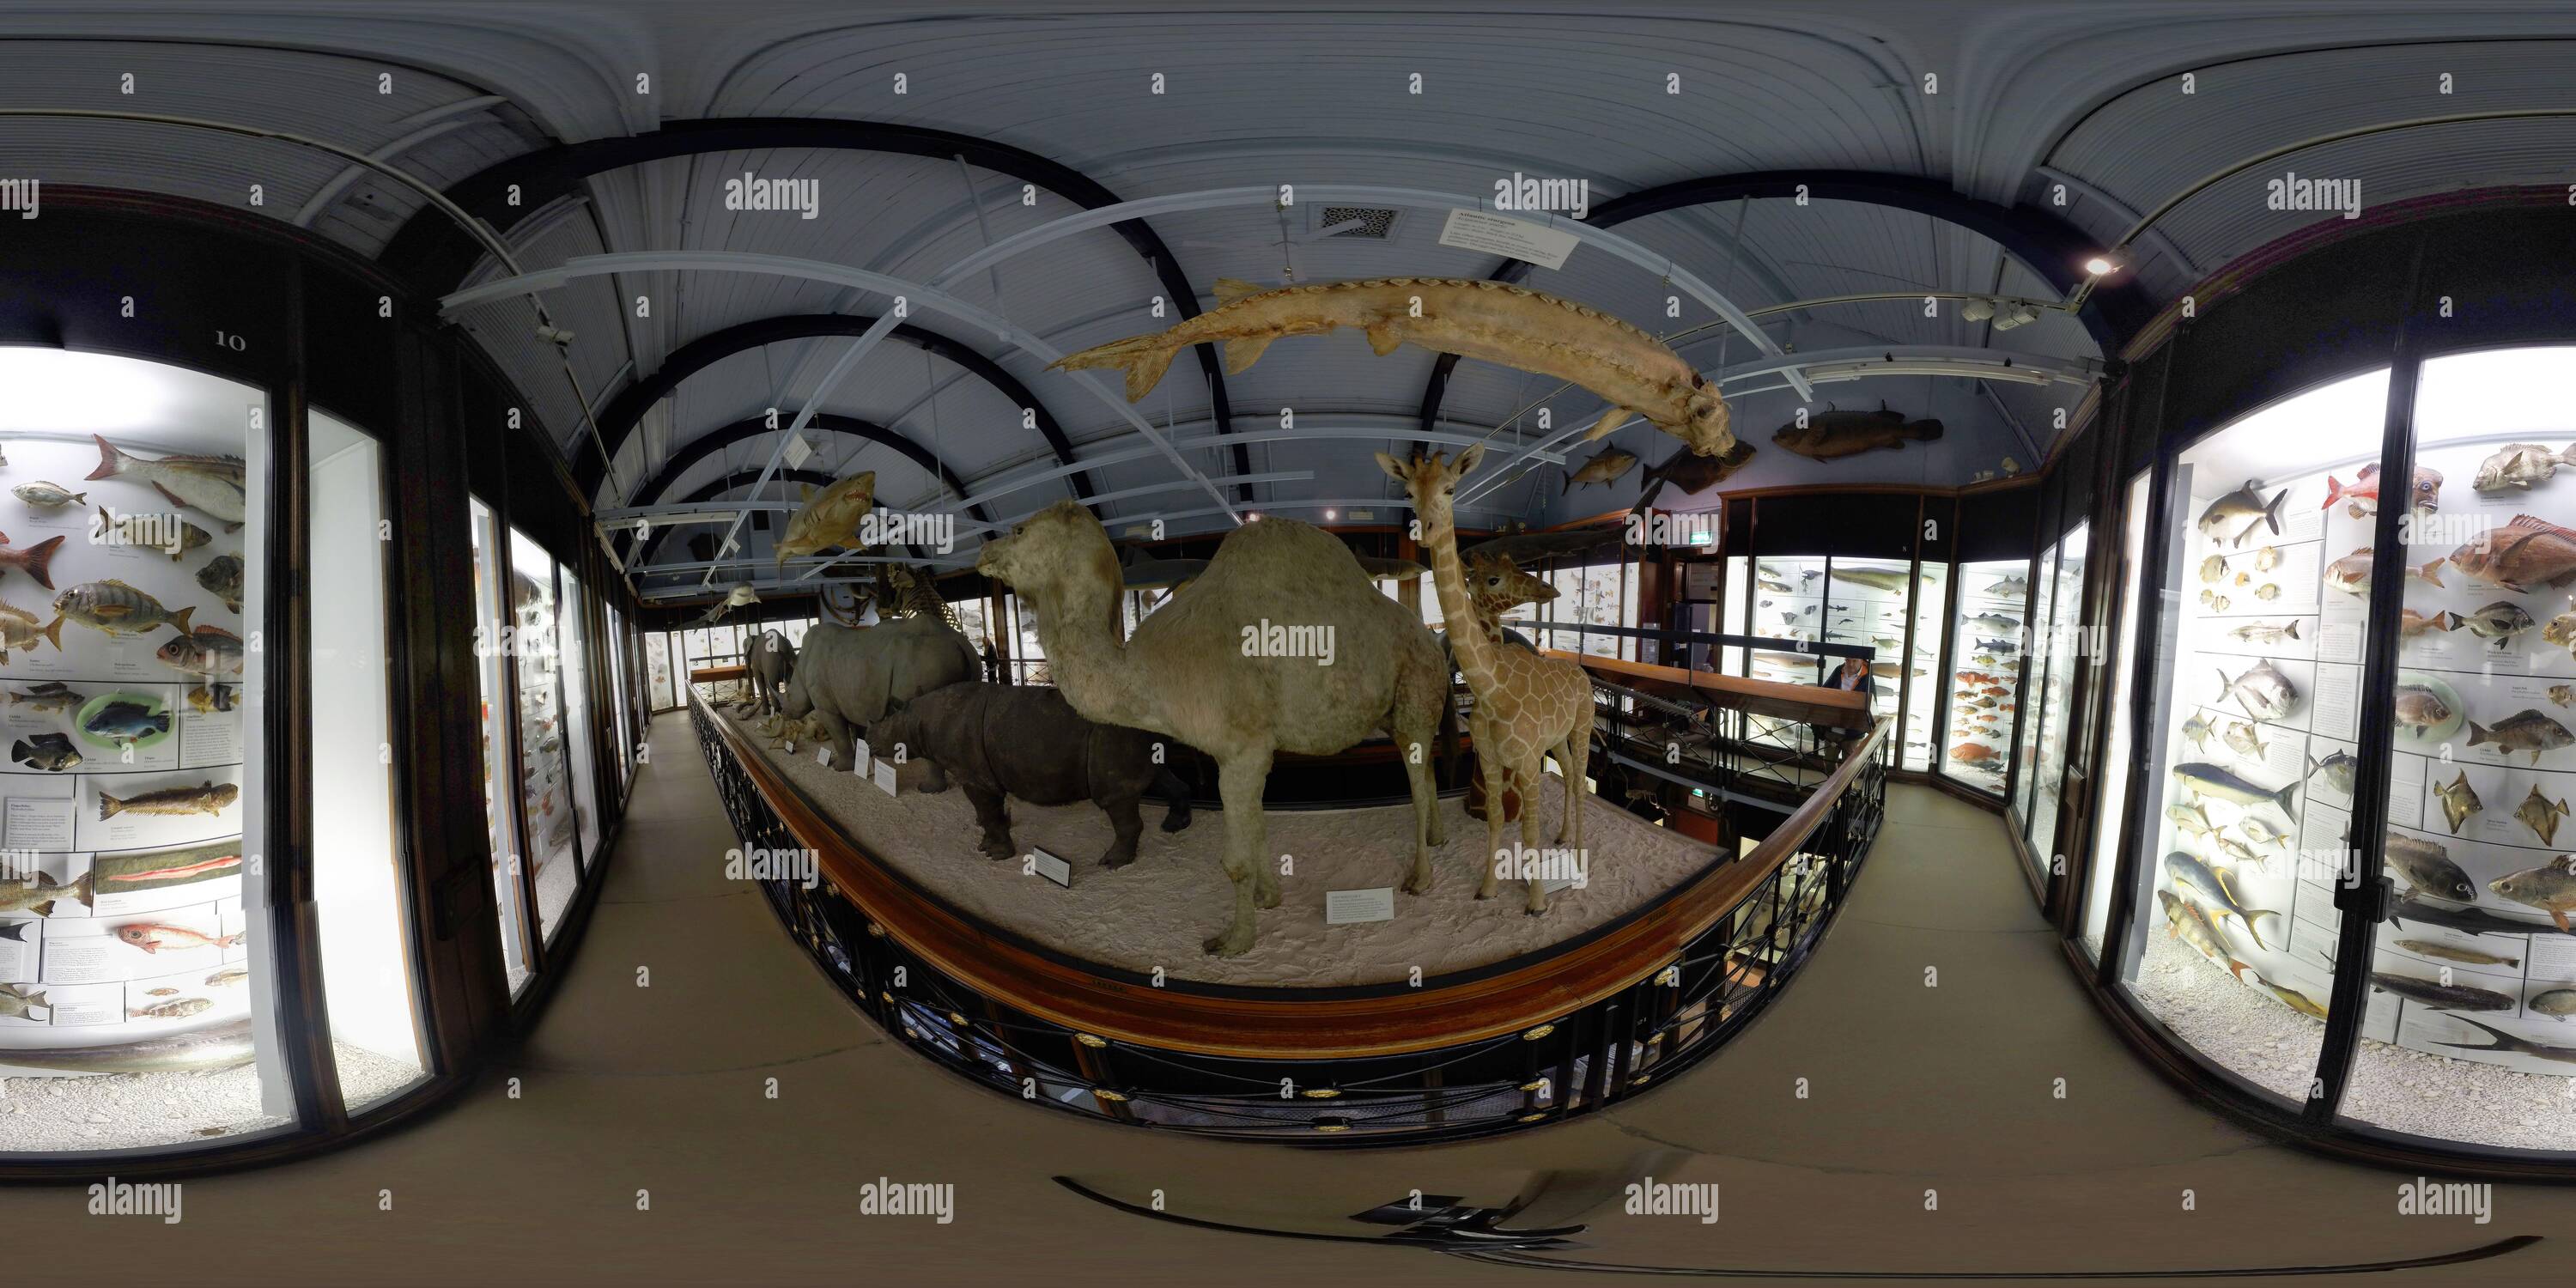 Vue panoramique à 360° de LE MUSÉE D'HISTOIRE NATURELLE DE TRING. CRÉDIT PHOTO : IMAGE DE MARQUE DOULEUR / ALAMY STOCK